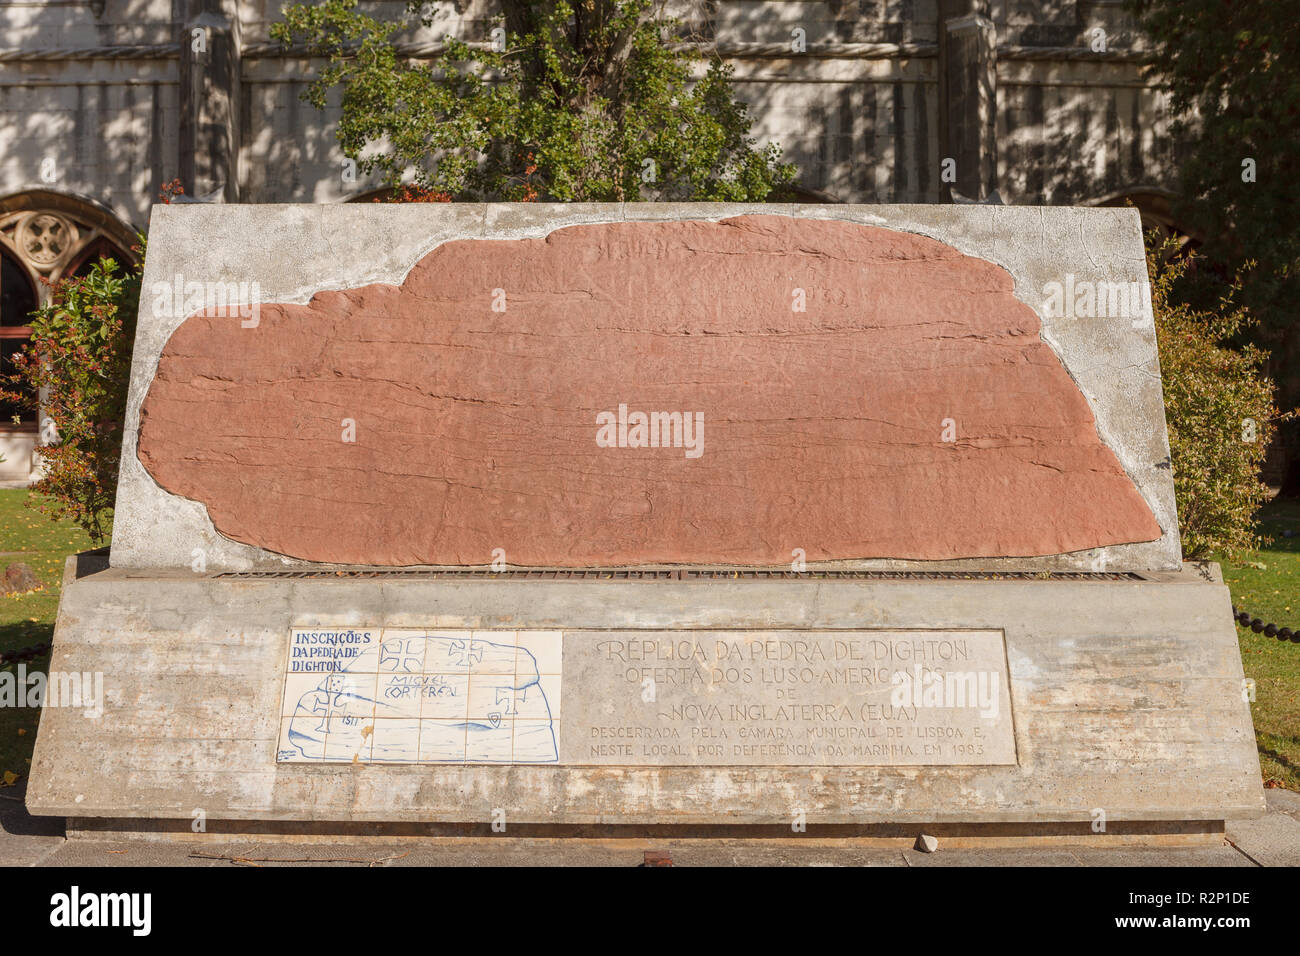 Pedra de Dighton, Museu de Marinha. Lisbon, Portugal Stock Photo